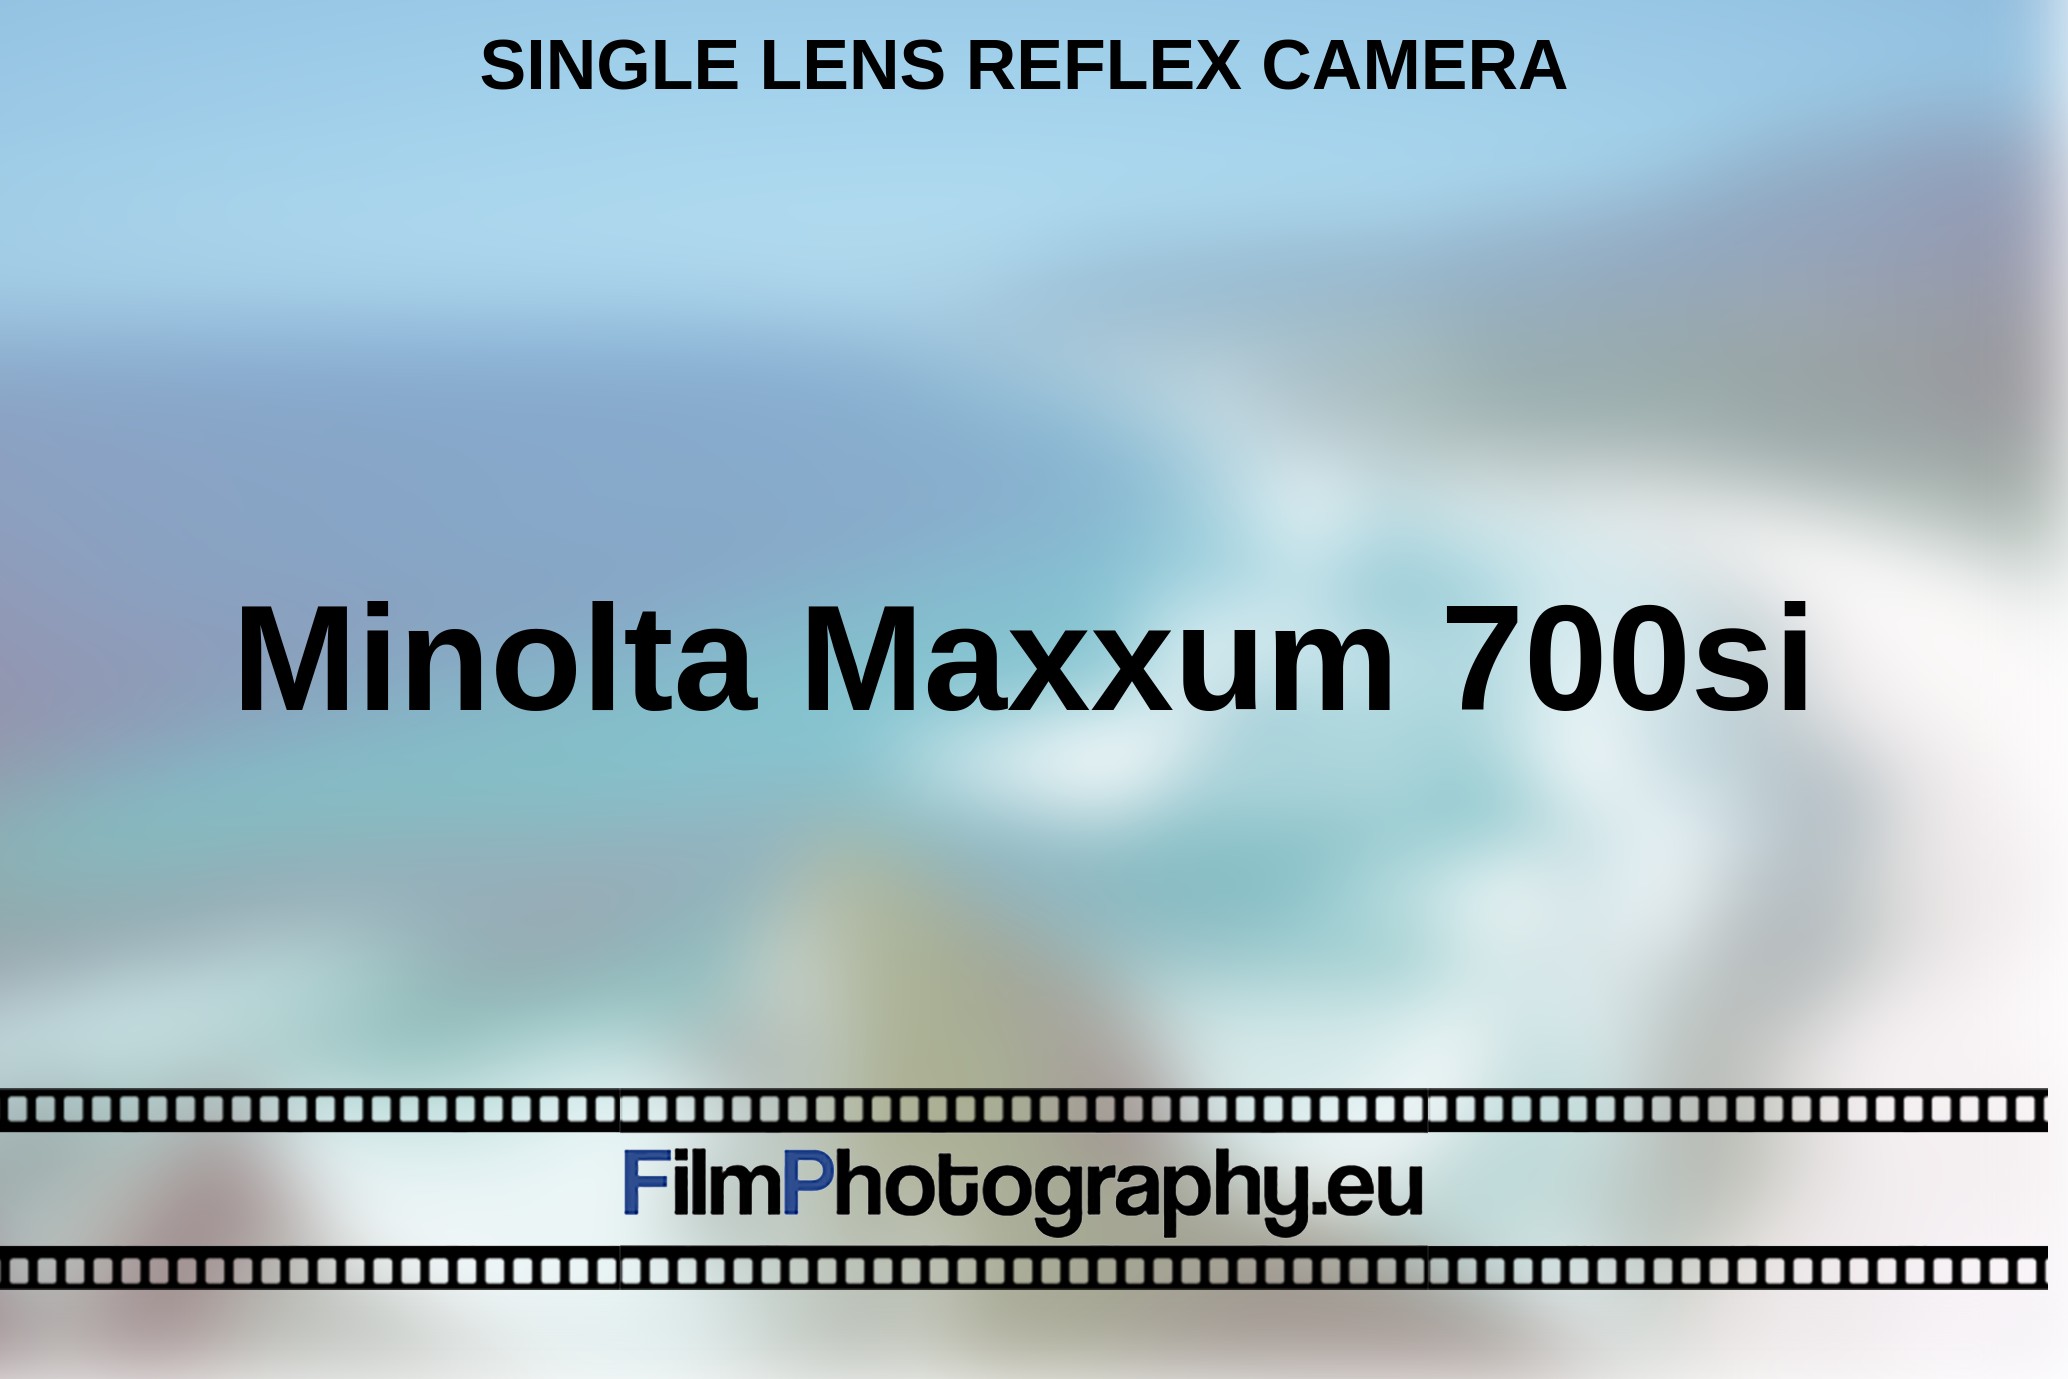 Minolta-Maxxum-700si-single-lens-reflex-camera-bnv.jpg